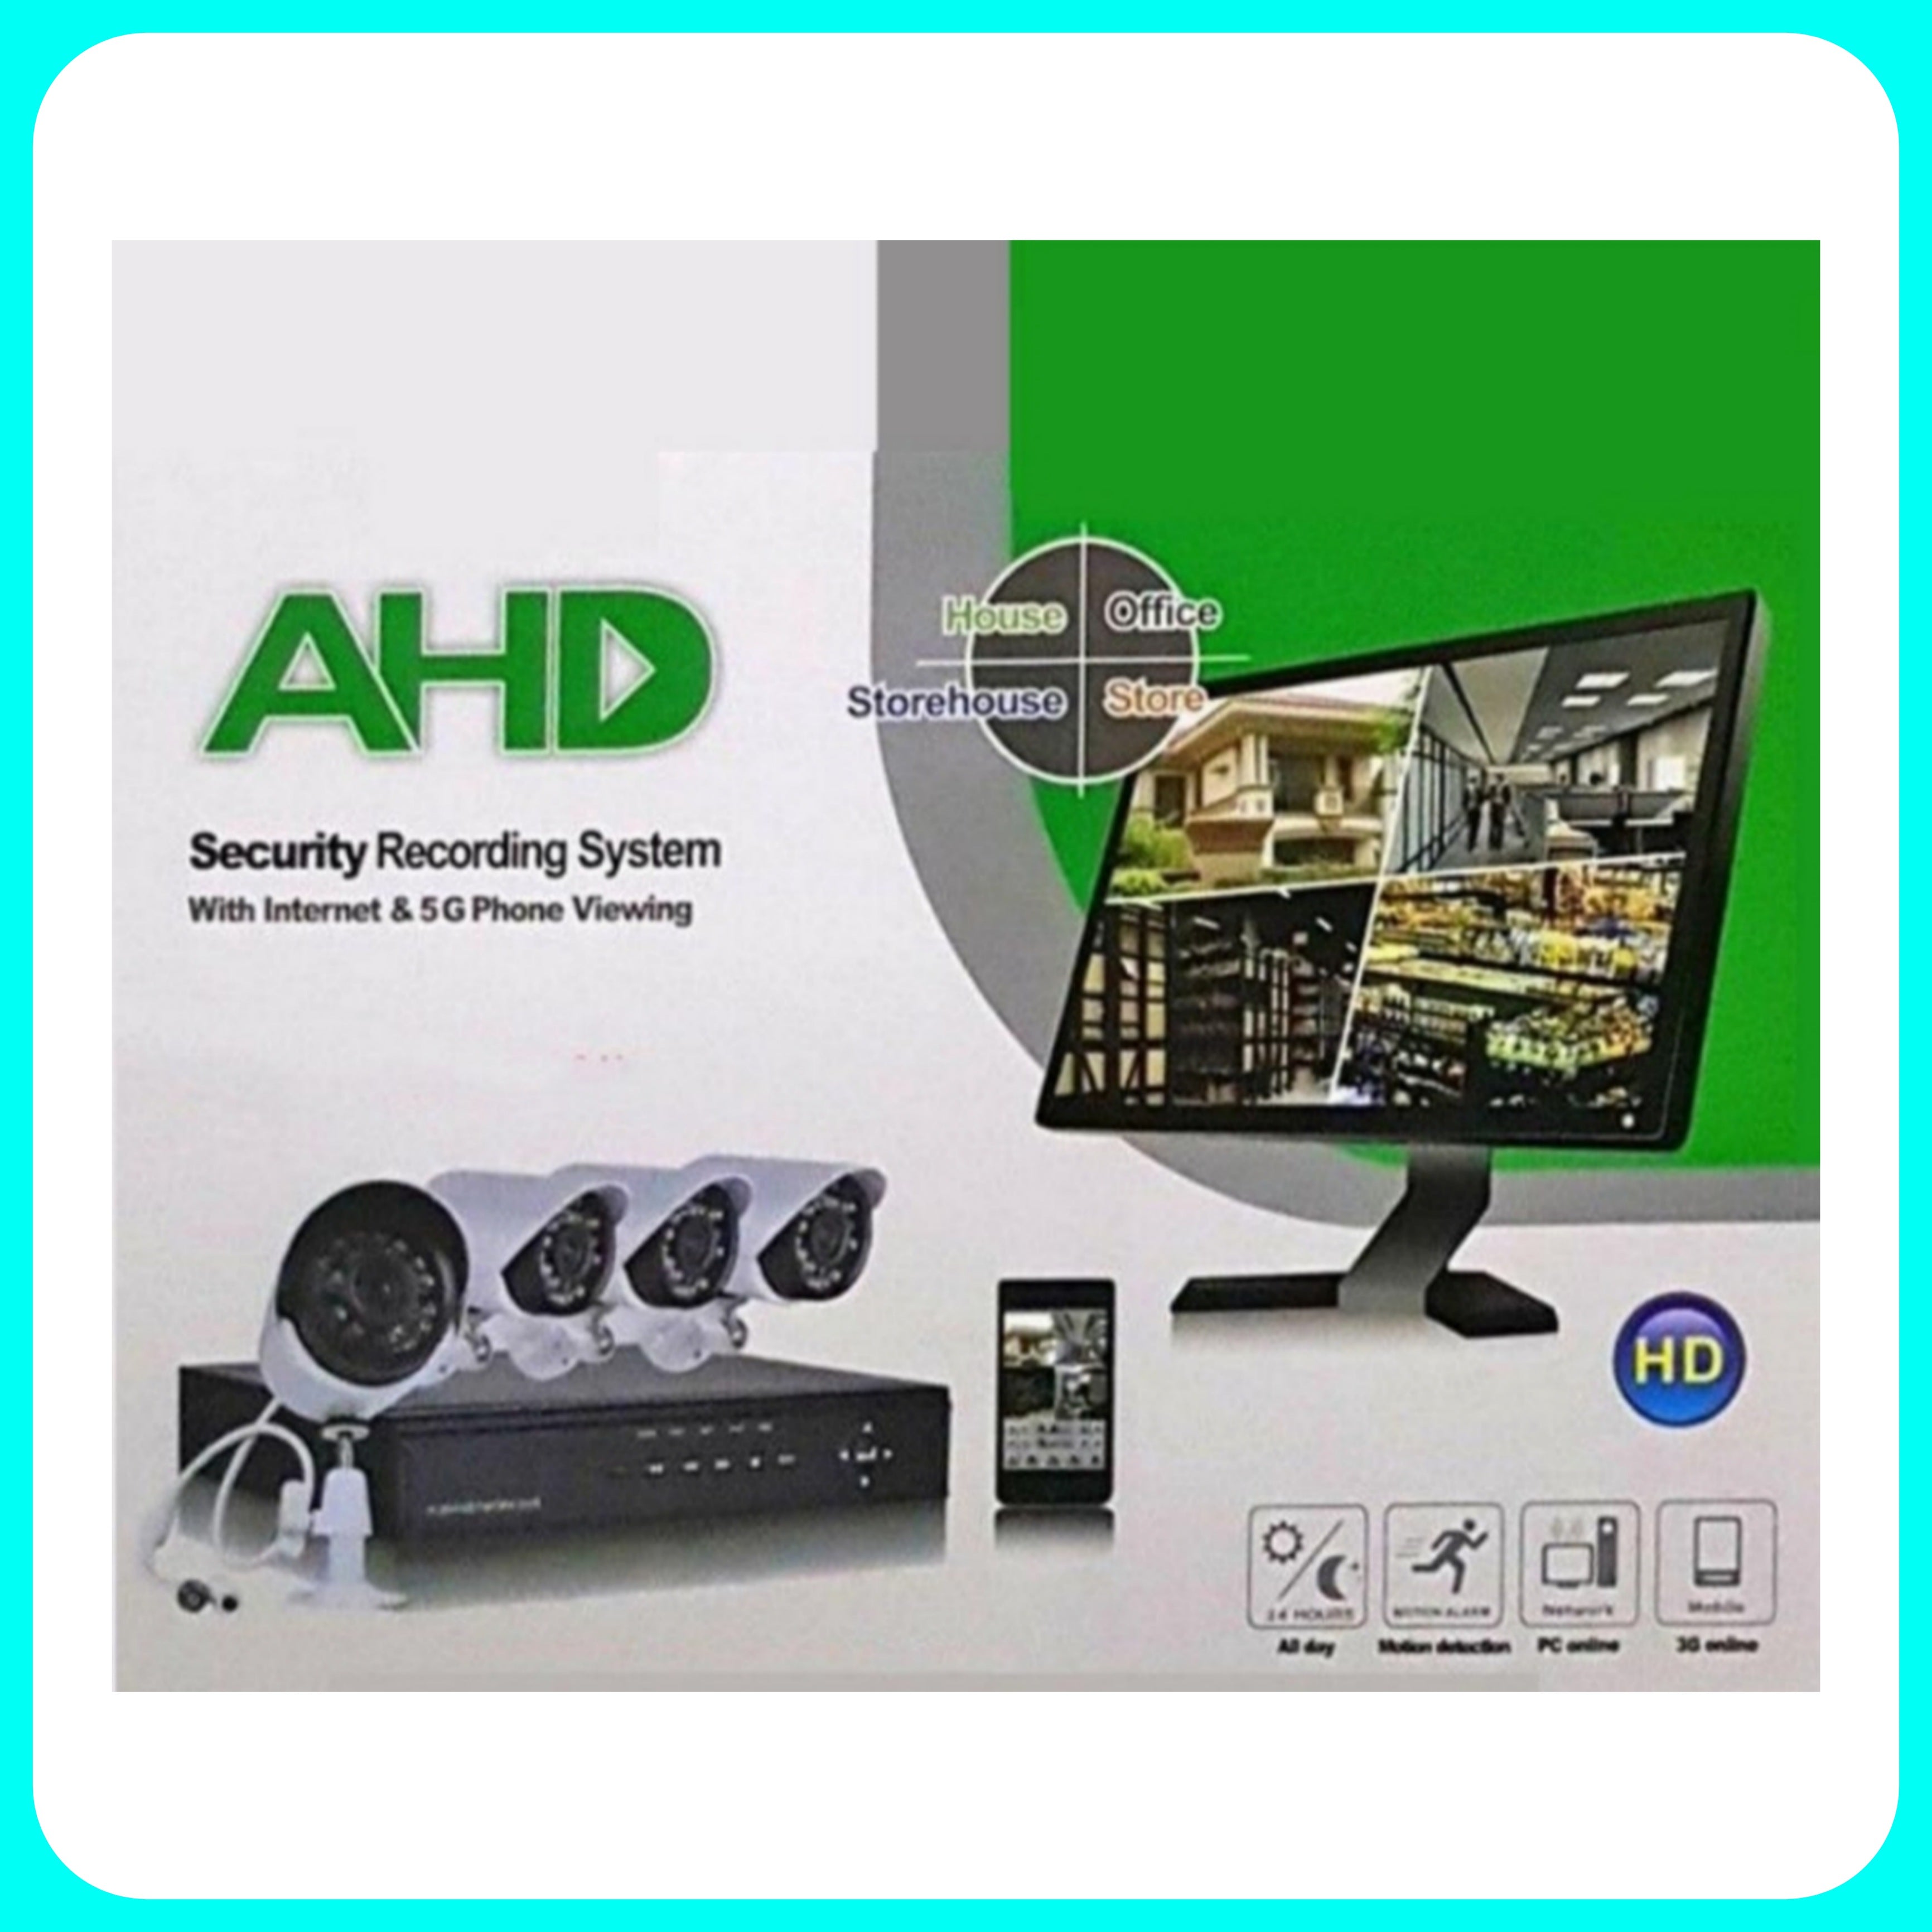 Kit Videosorveglianza 4x Camere [Filo] - Telecamere Videosorveglianza, AHD, Infrarossi, DVR, Mouse, 4 Canali